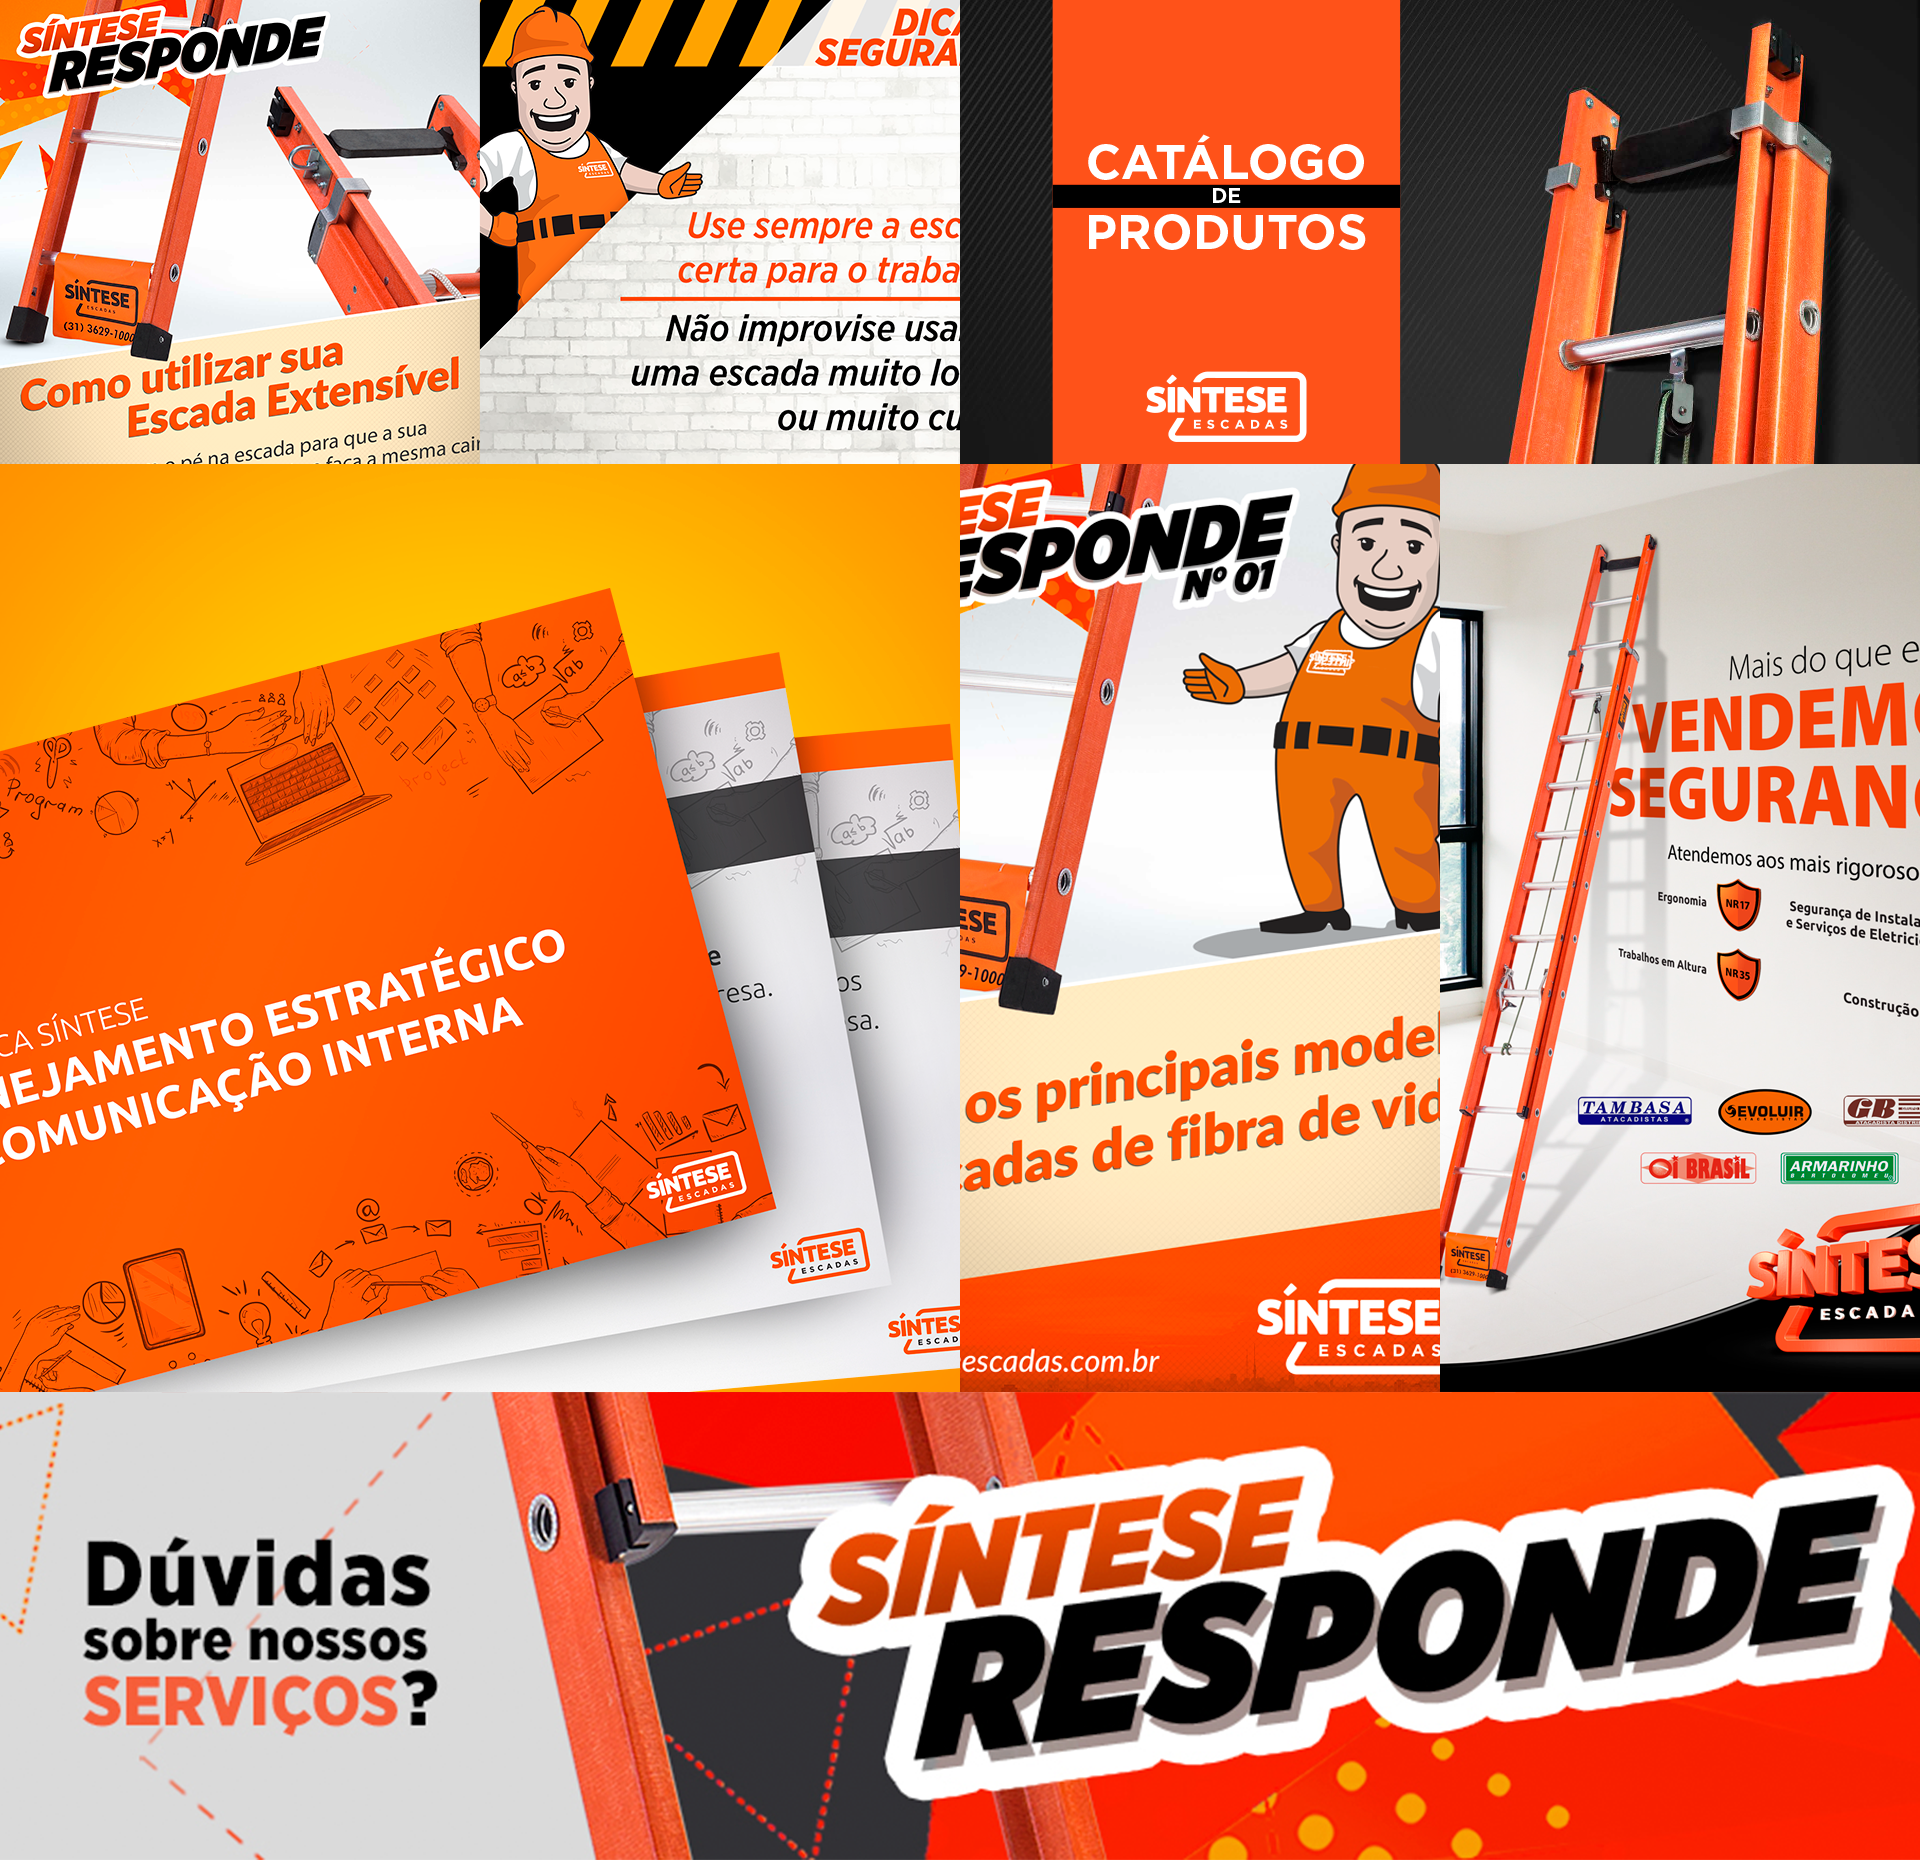 Portfólio Síntese - Galpão33: Agência de Publicidade e Comunicação